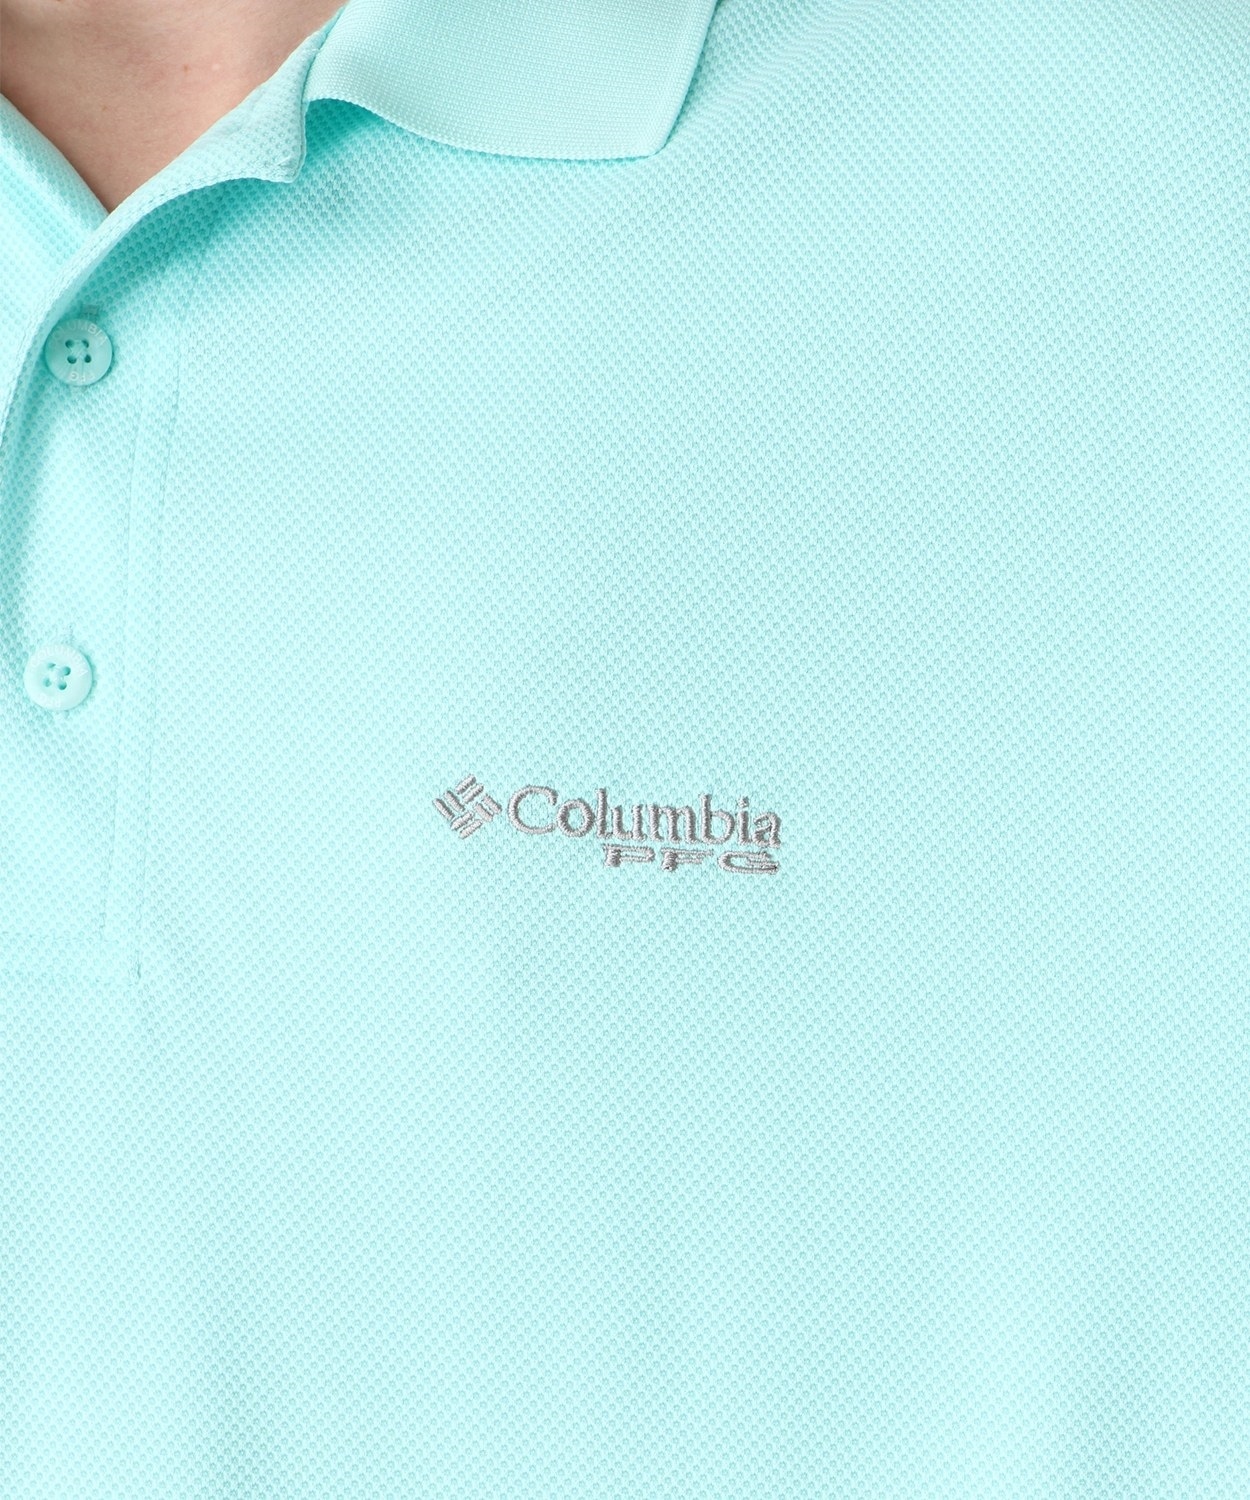 コロンビア公式サイトパーフェクトキャストポロシャツ(S Black): アウトレット商品以外用│アウトドア用品のコロンビアスポーツウェア公式通販サイト